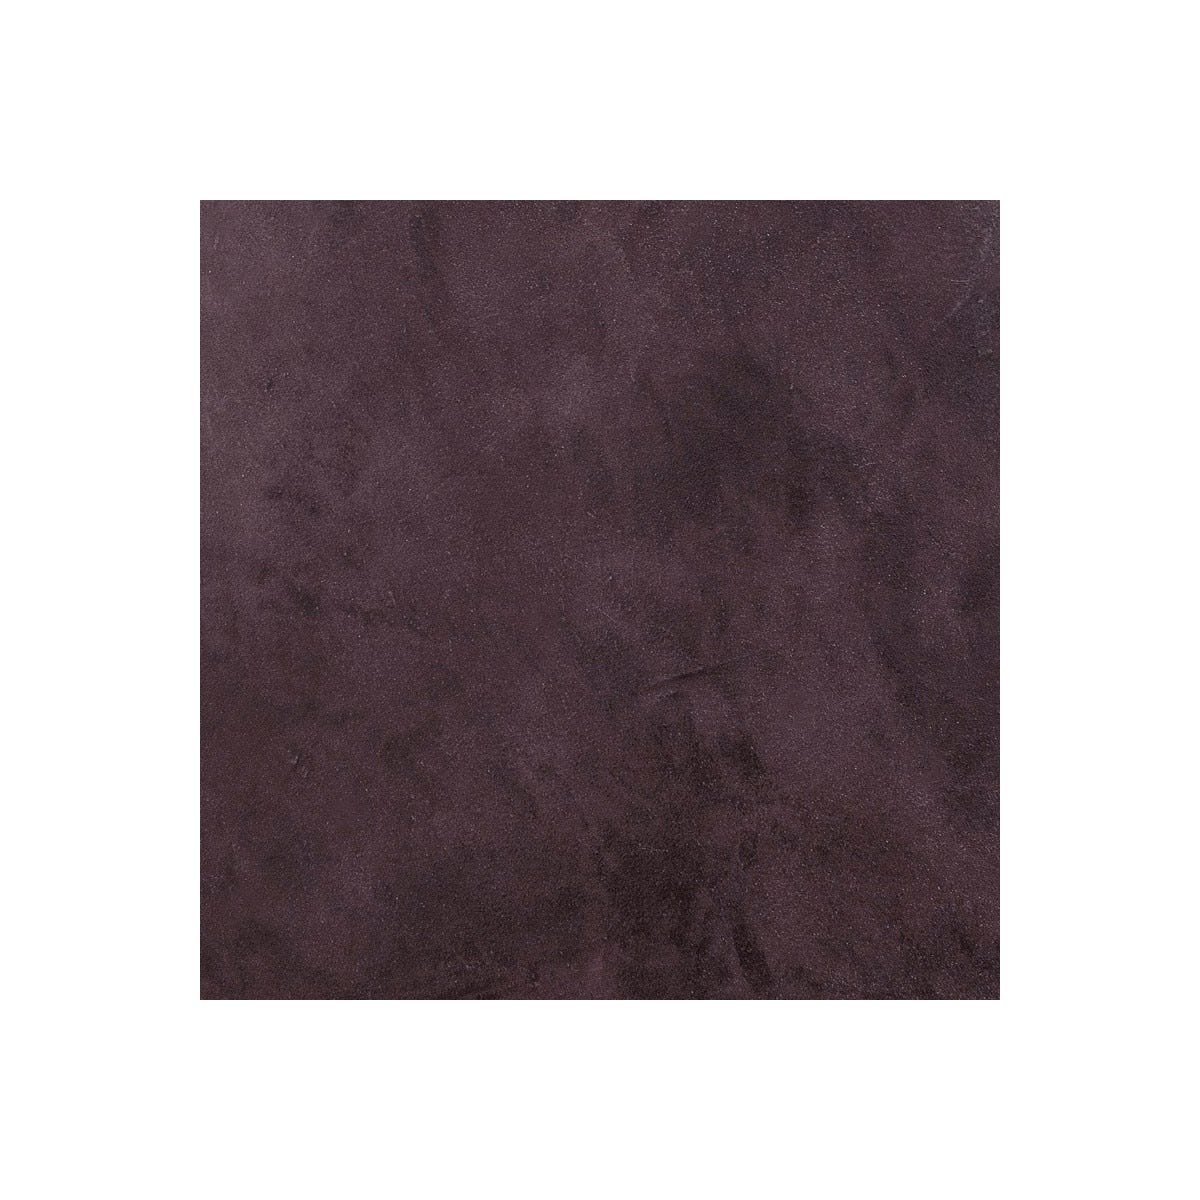 Béton Ciré Sol en Kit - Primaire et vernis de finition inclus - 2 m² (en 2 couches) - Mure Violet - ARCANE INDUSTRIES 1